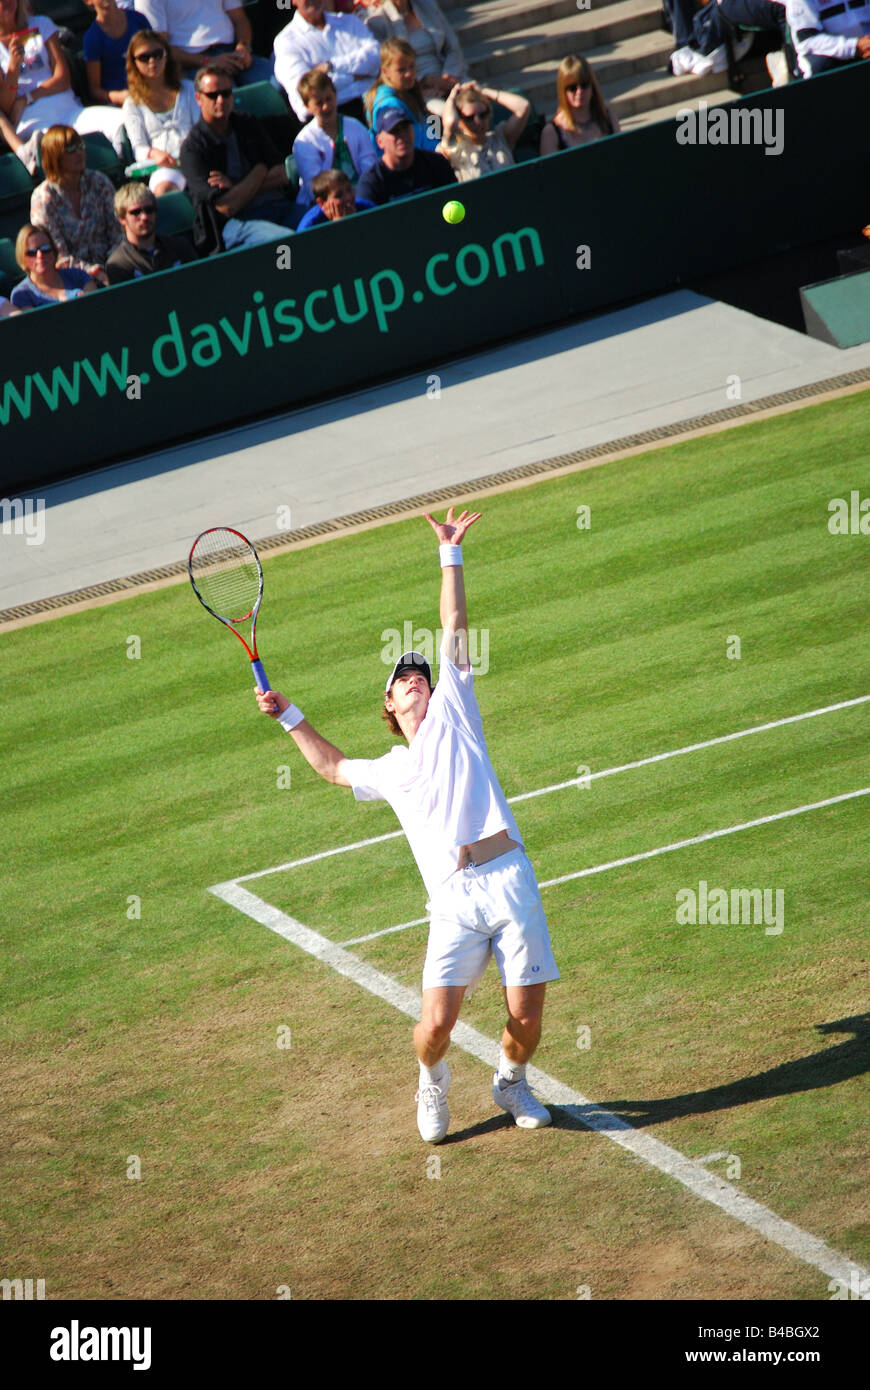 Andy Murray Serving, match de la coupe Davis, Grande-Bretagne contre Autriche, Wimbledon Lawn tennis Club, Borough of Merton, Grand Londres, Angleterre, Royaume-Uni Banque D'Images